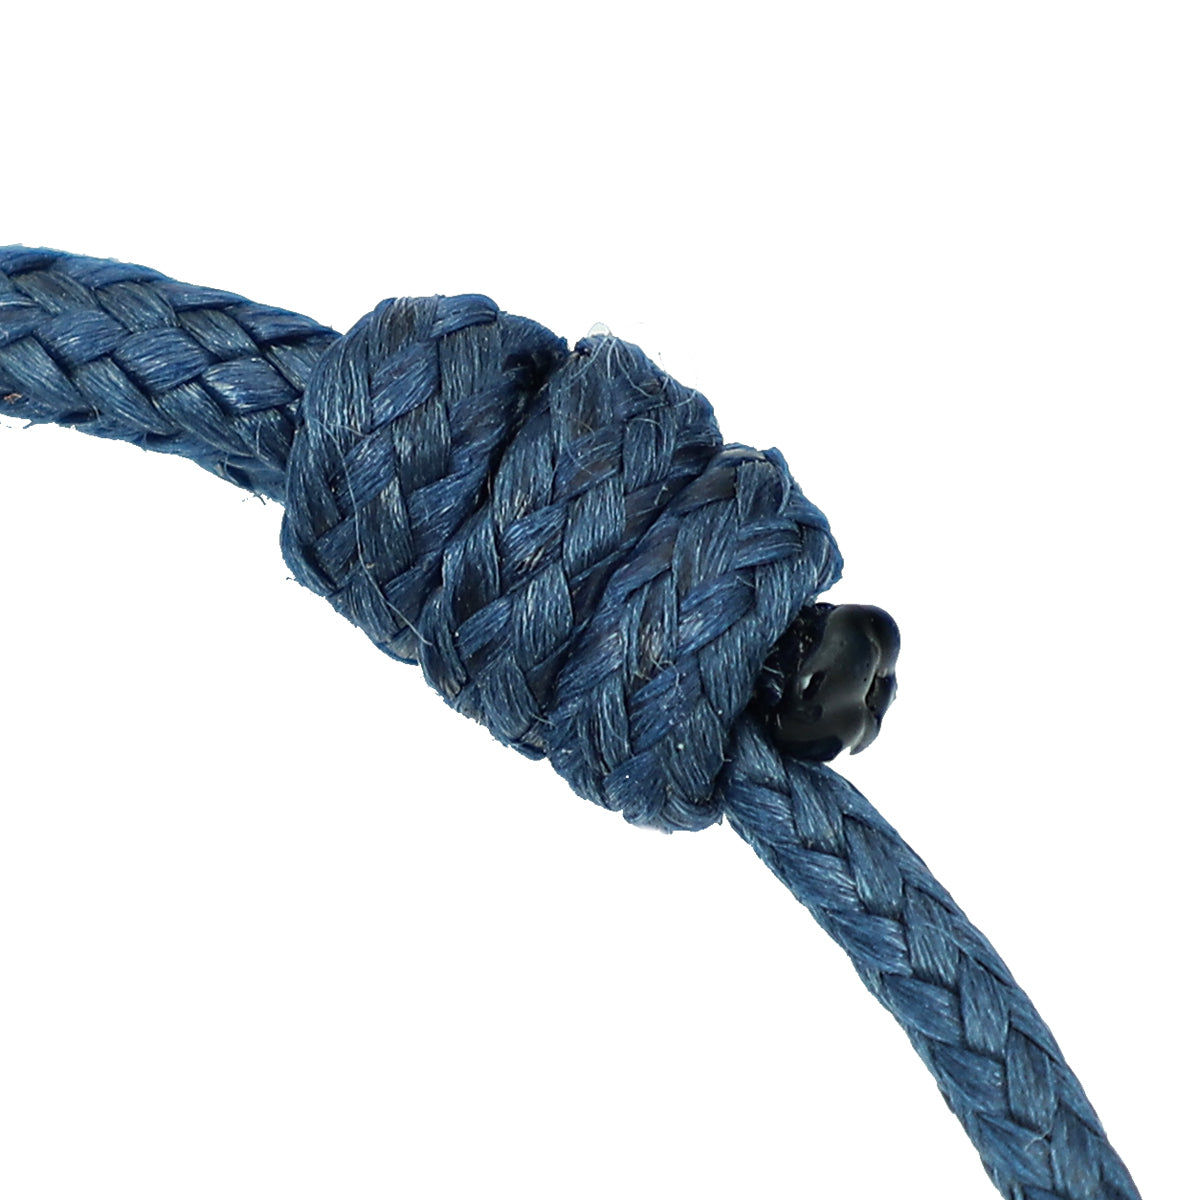 Audemars Piguet ST.ST Blue Royal Oak 50 Anniversary Adjustable Cord Bracelet